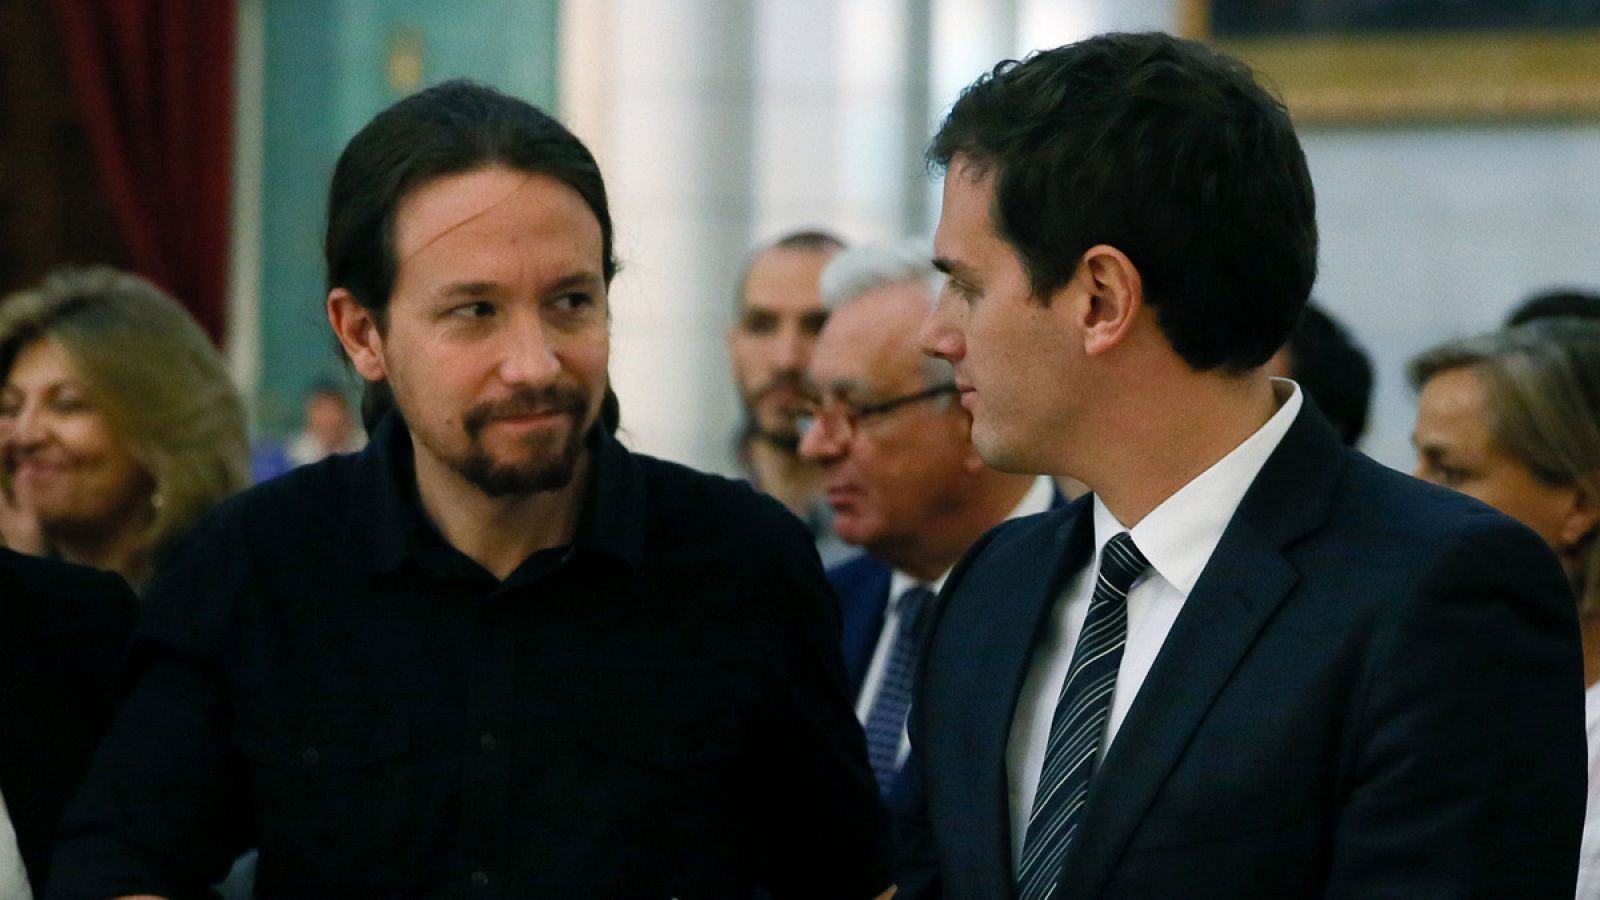 Los líderes de Podemos y Ciudadanos, Pablo Iglesias y Albert Rivera se saludan en una imagen de archivo